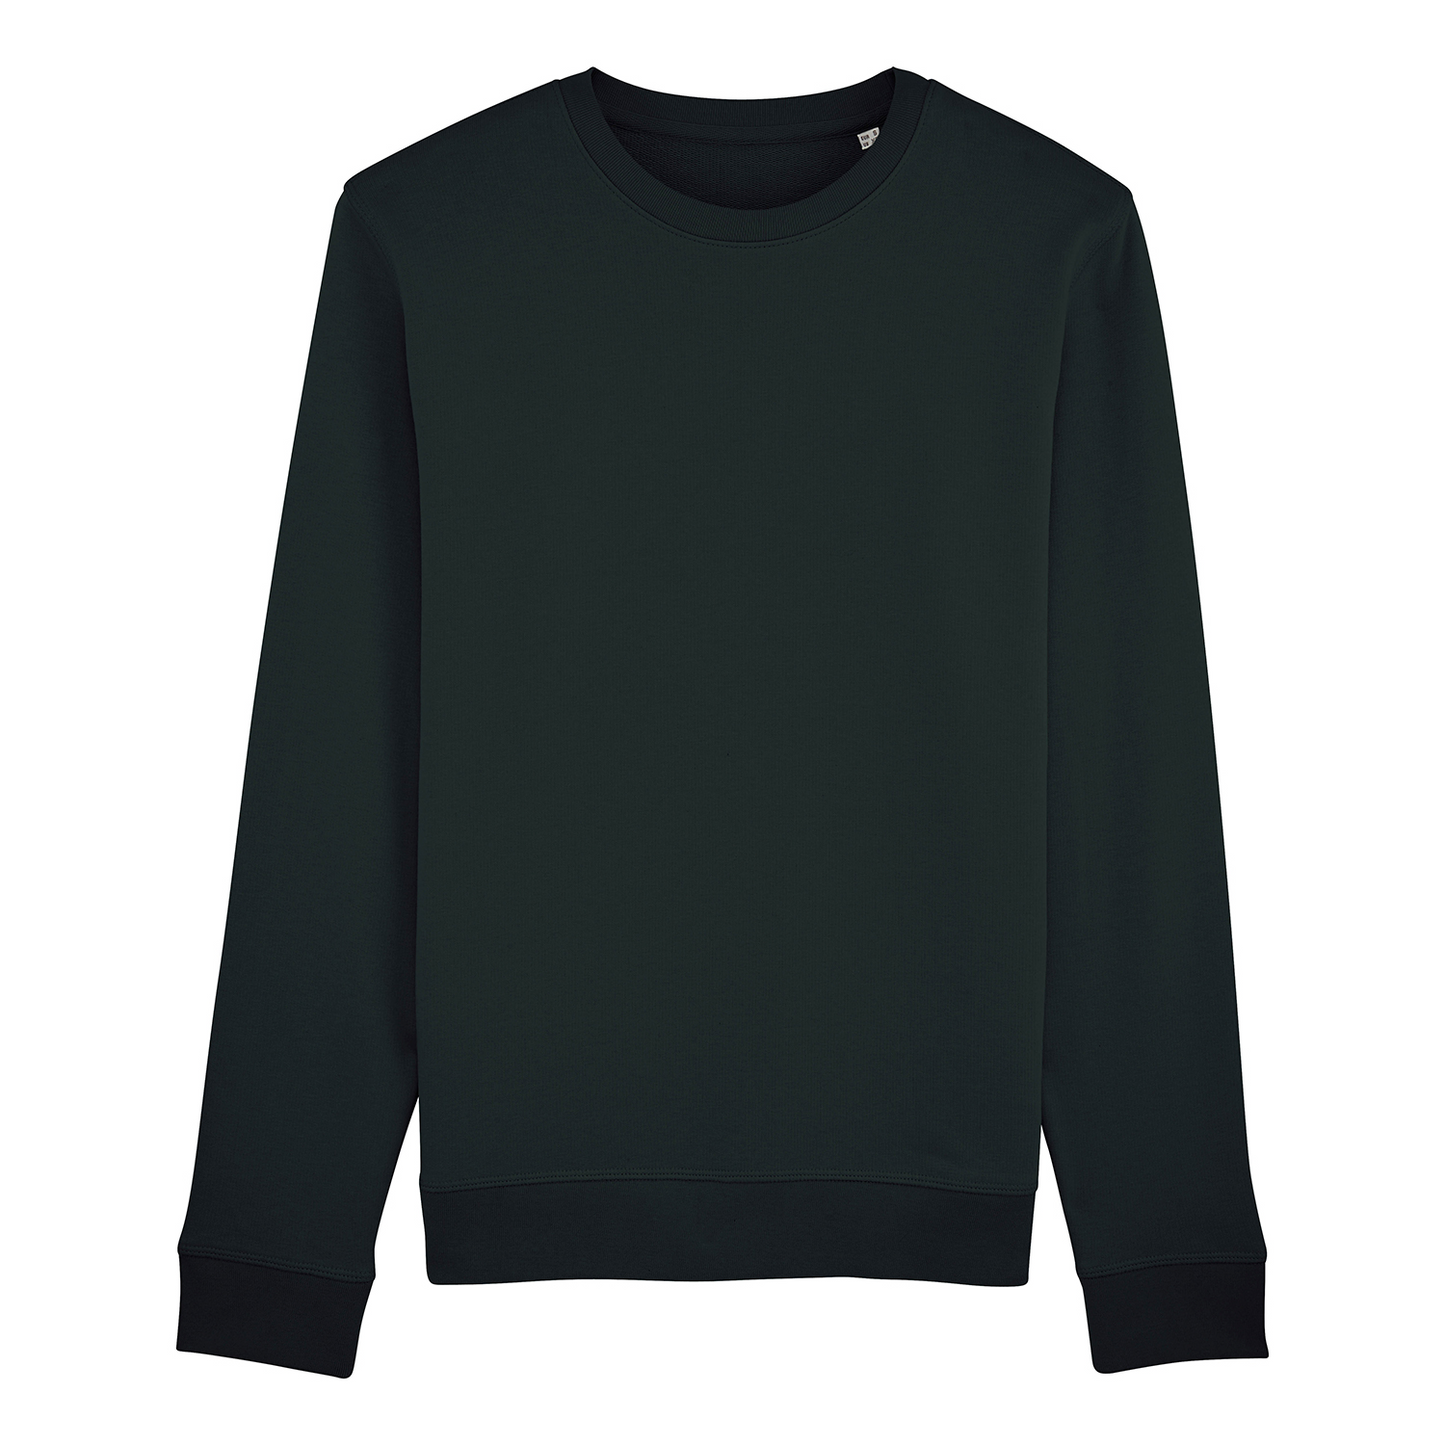 Sweater Astro, schwarz, farbiger Backprint